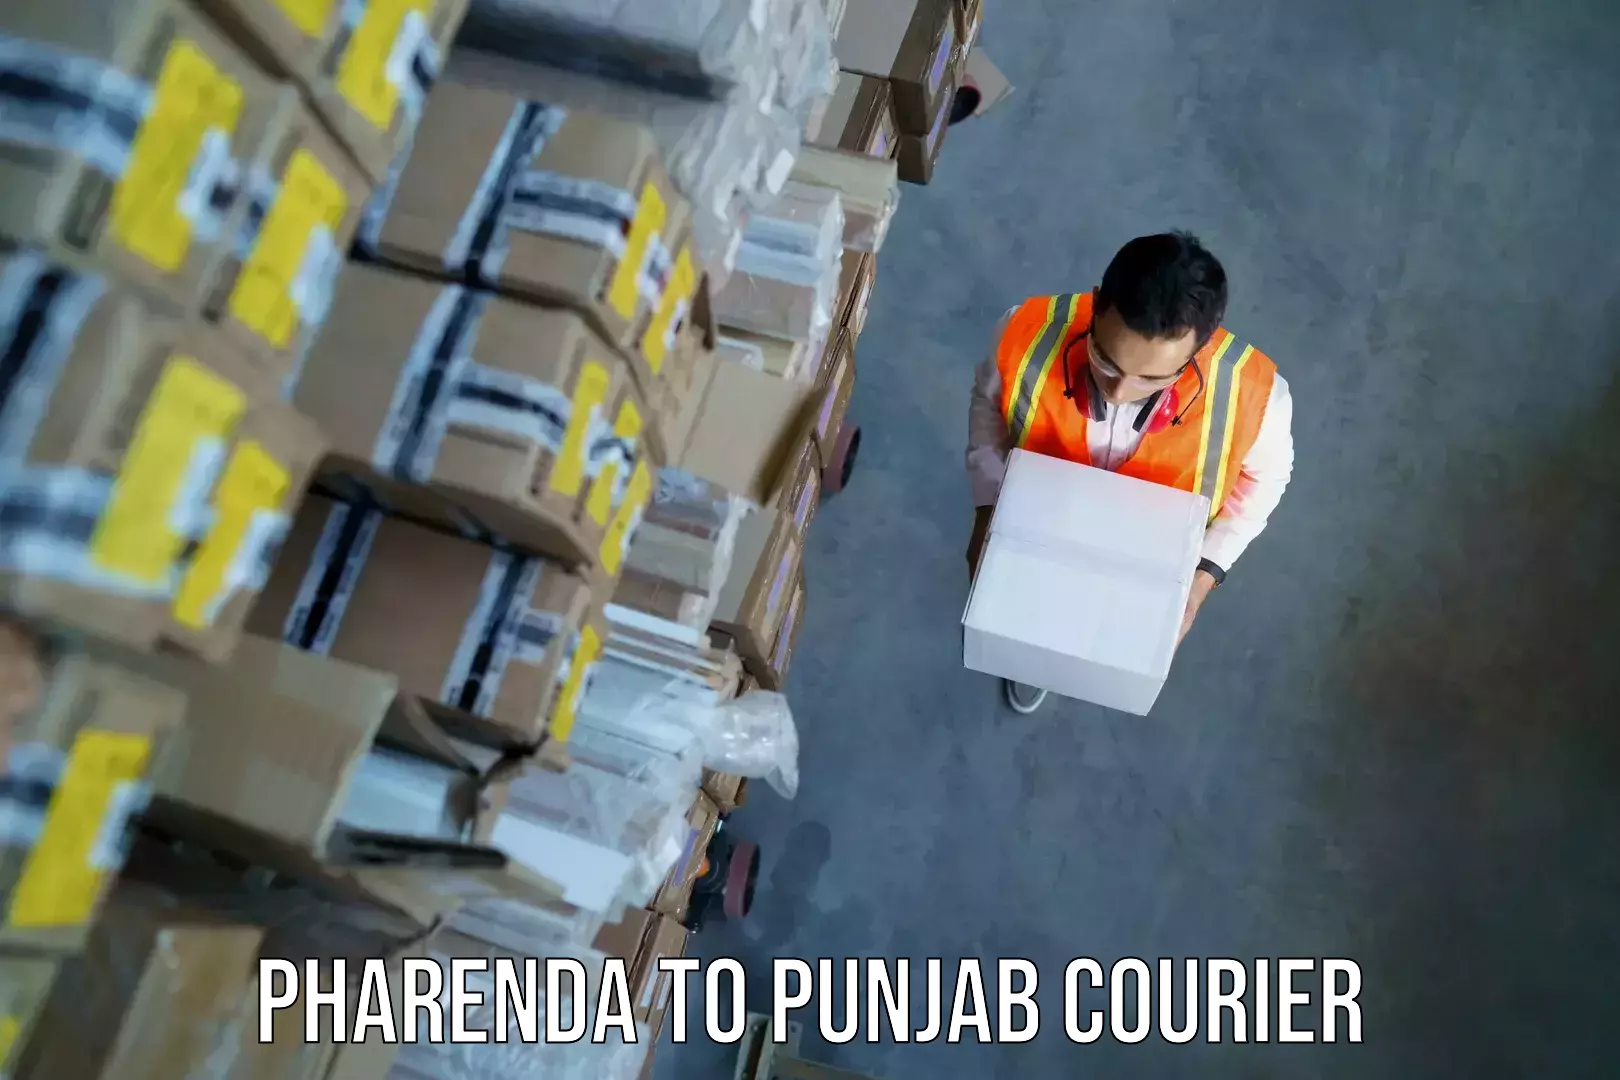 Baggage transport technology Pharenda to Punjab